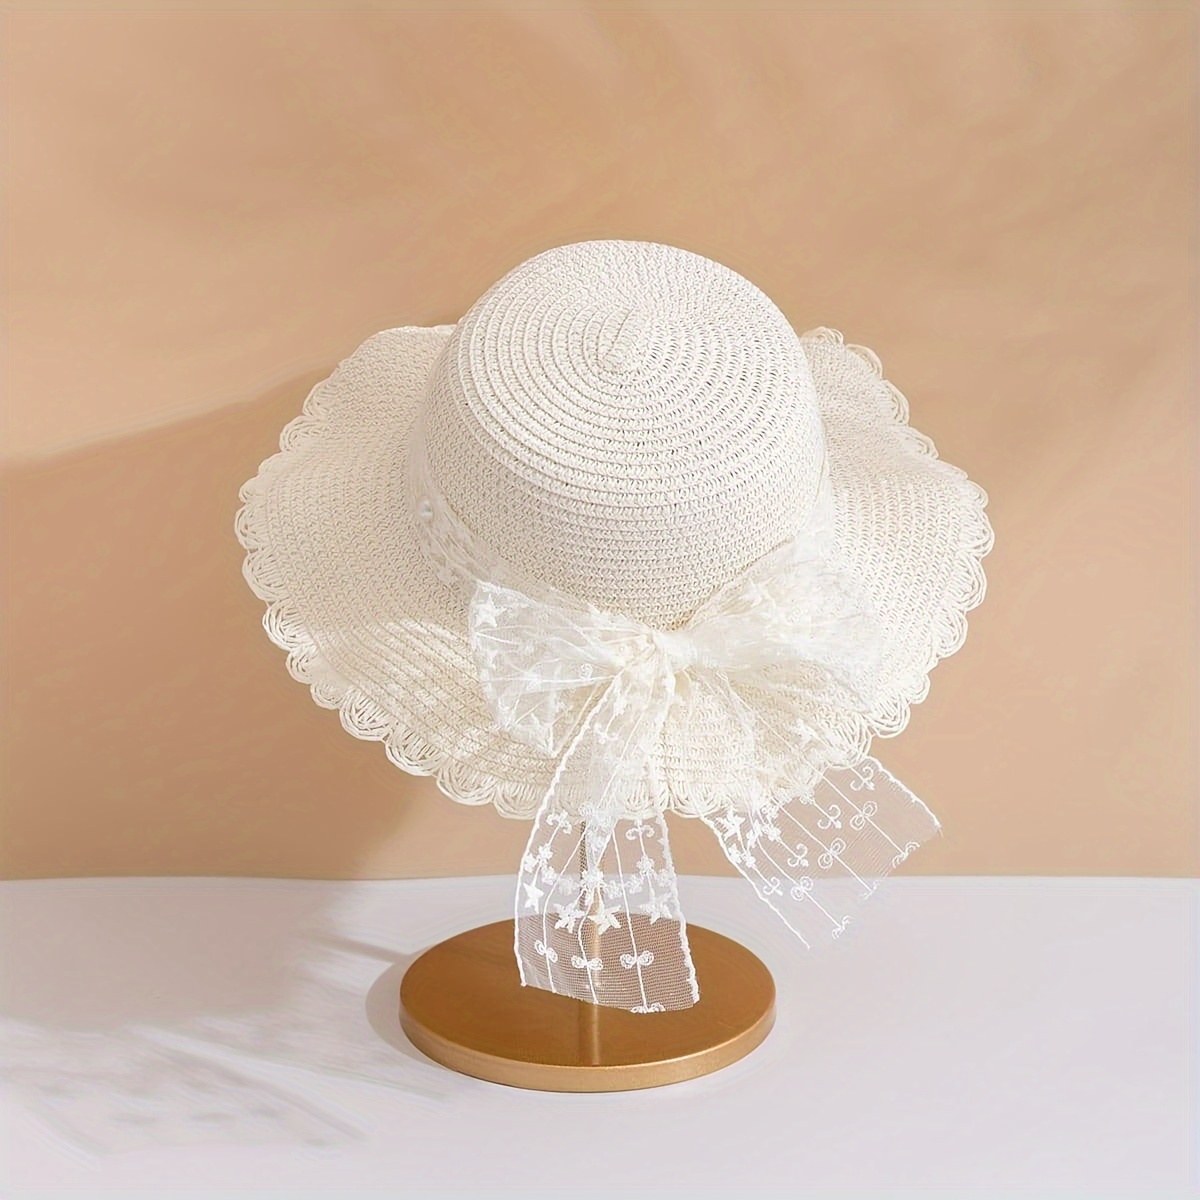 

Petit chapeau de soleil blanc élégant en dentelle avec nœud en paille, chapeau de plage mignon pour les voyages et les utilisations quotidiennes.